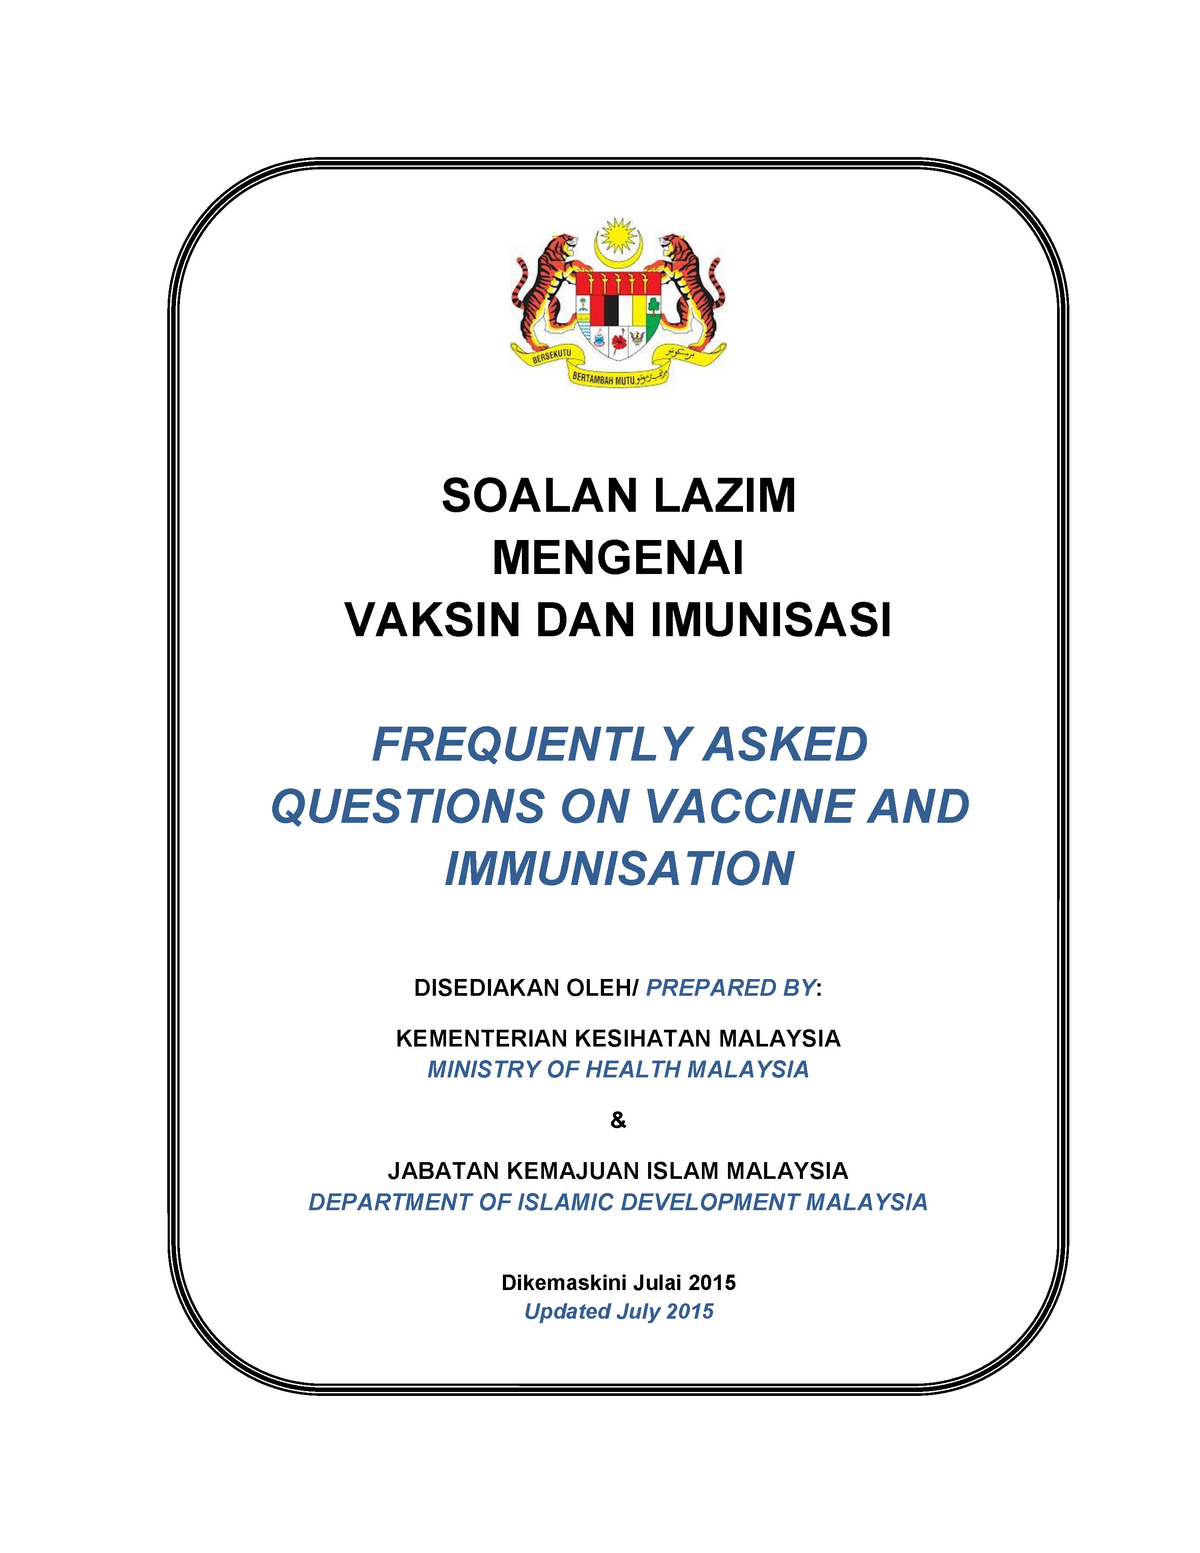 Soalan lazim berkaitan Vaksin Imunisasi 02072015  FREQUENTLY ASKED